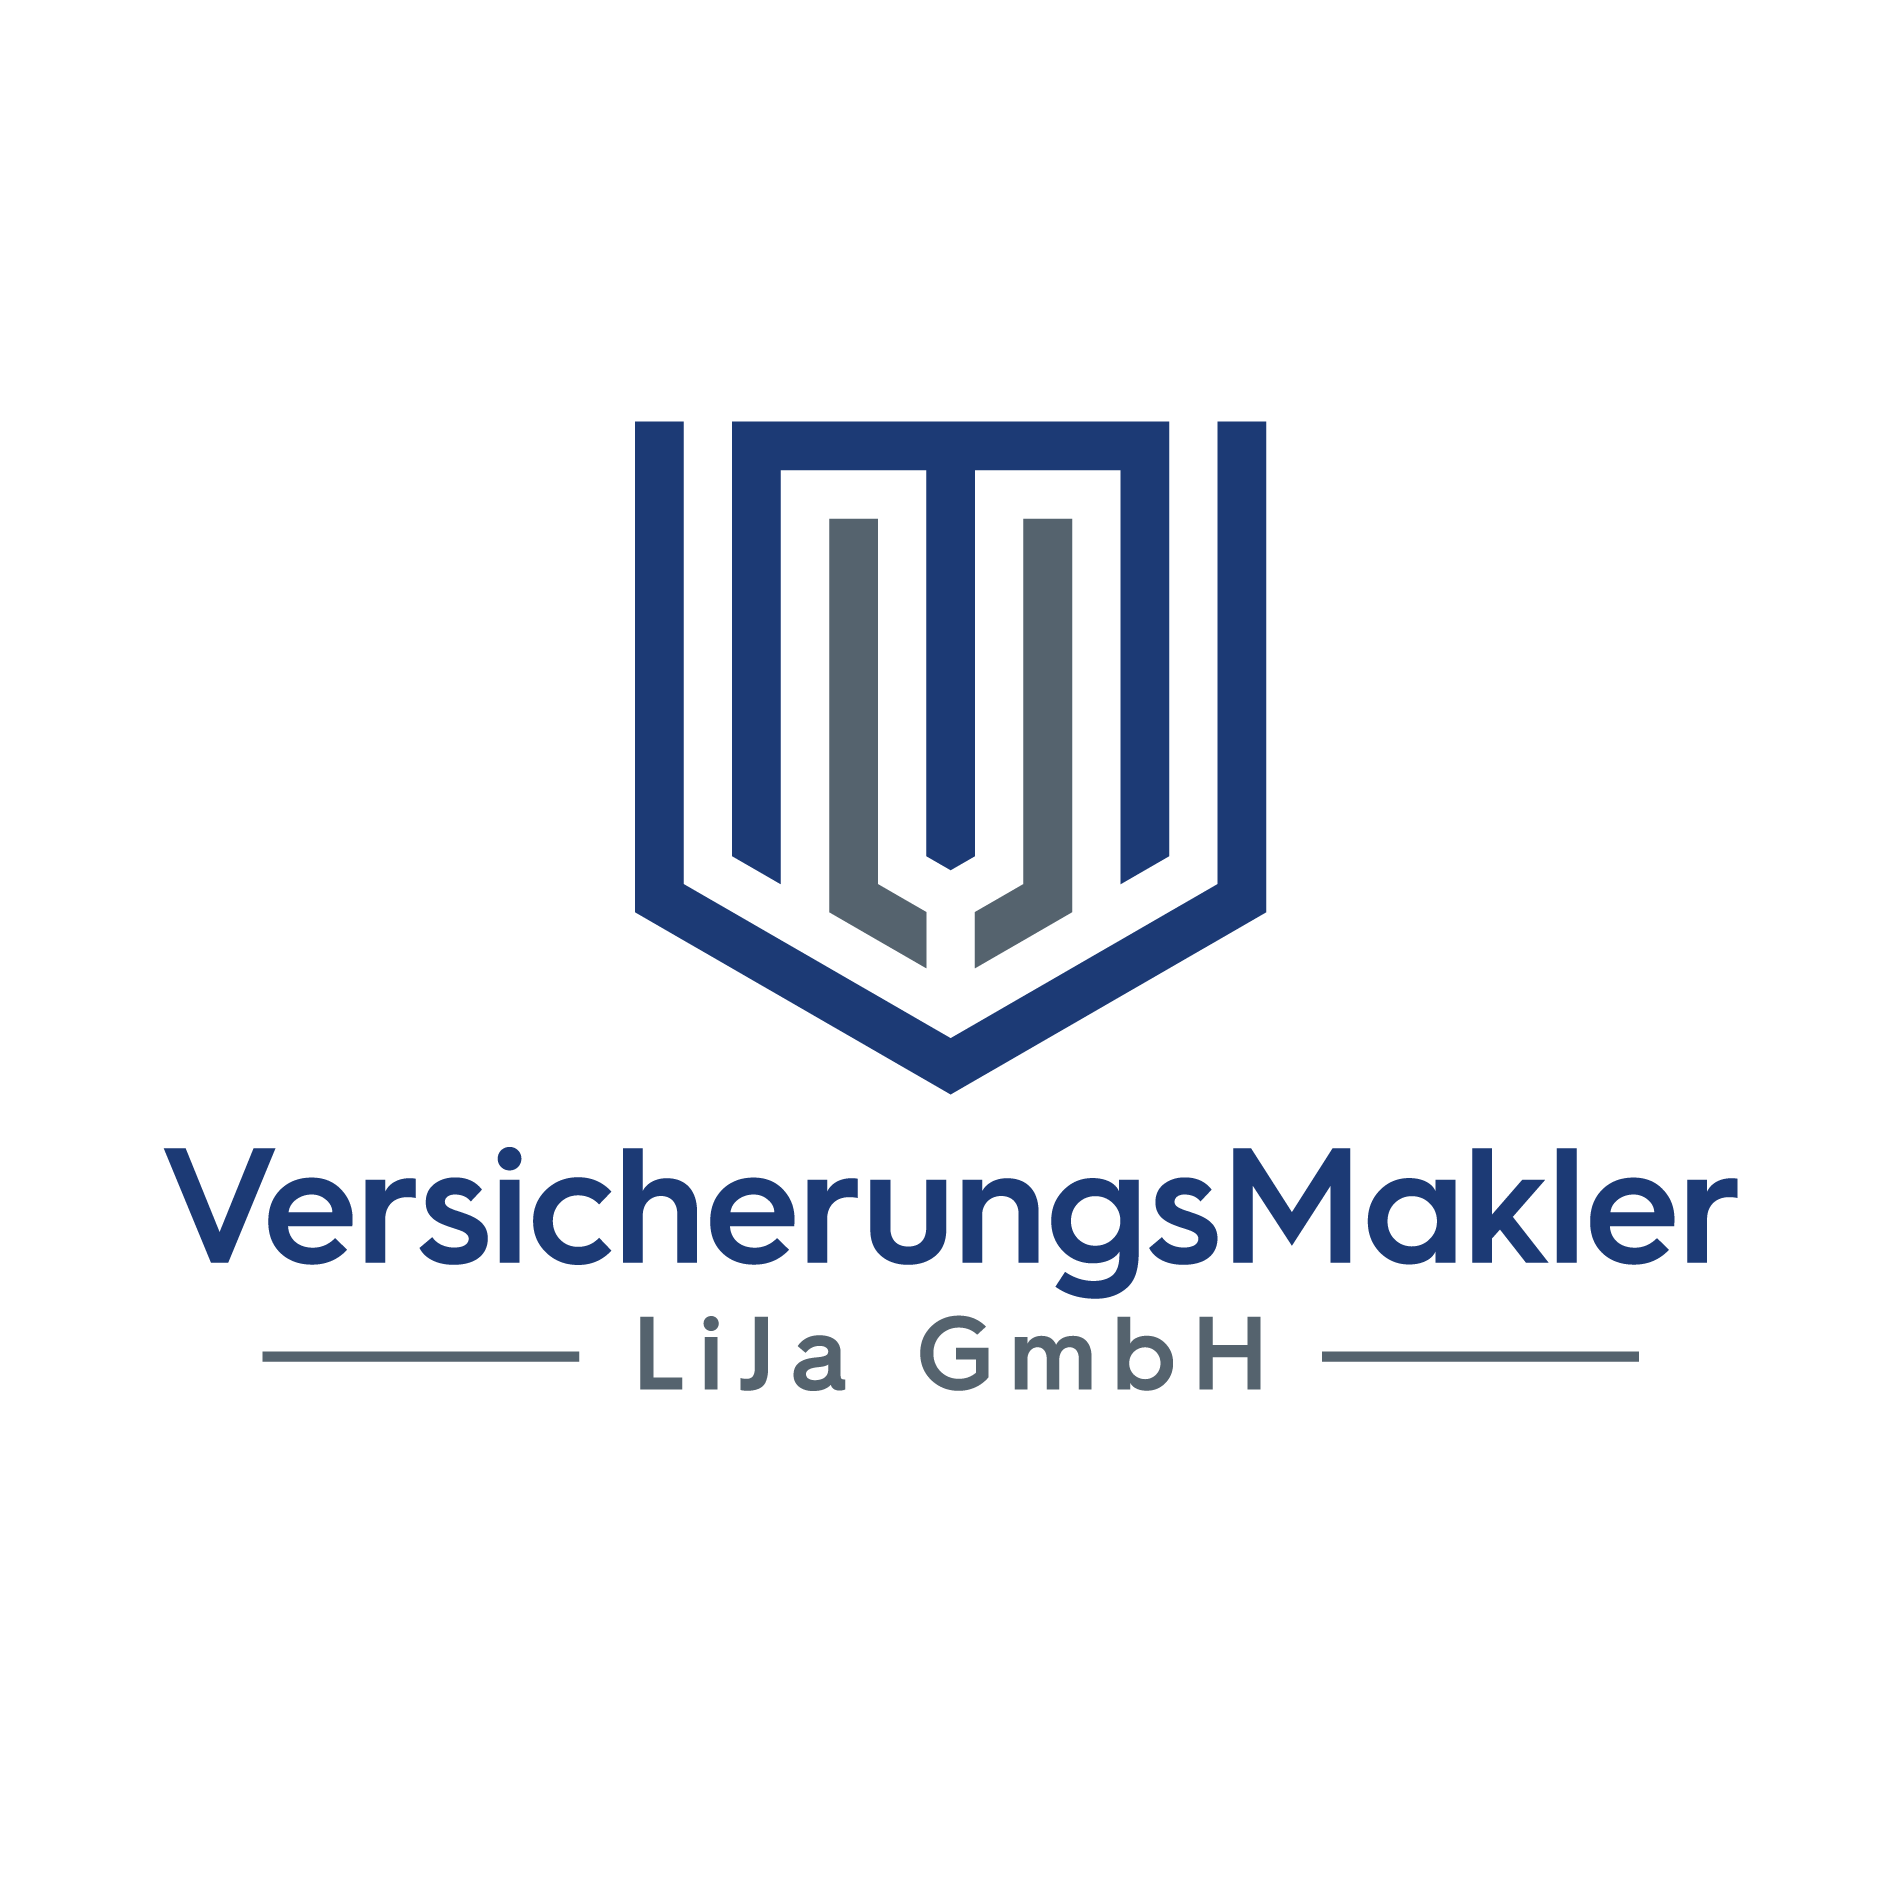 Versicherungsmakler LiJa GmbH in Dinslaken - Logo